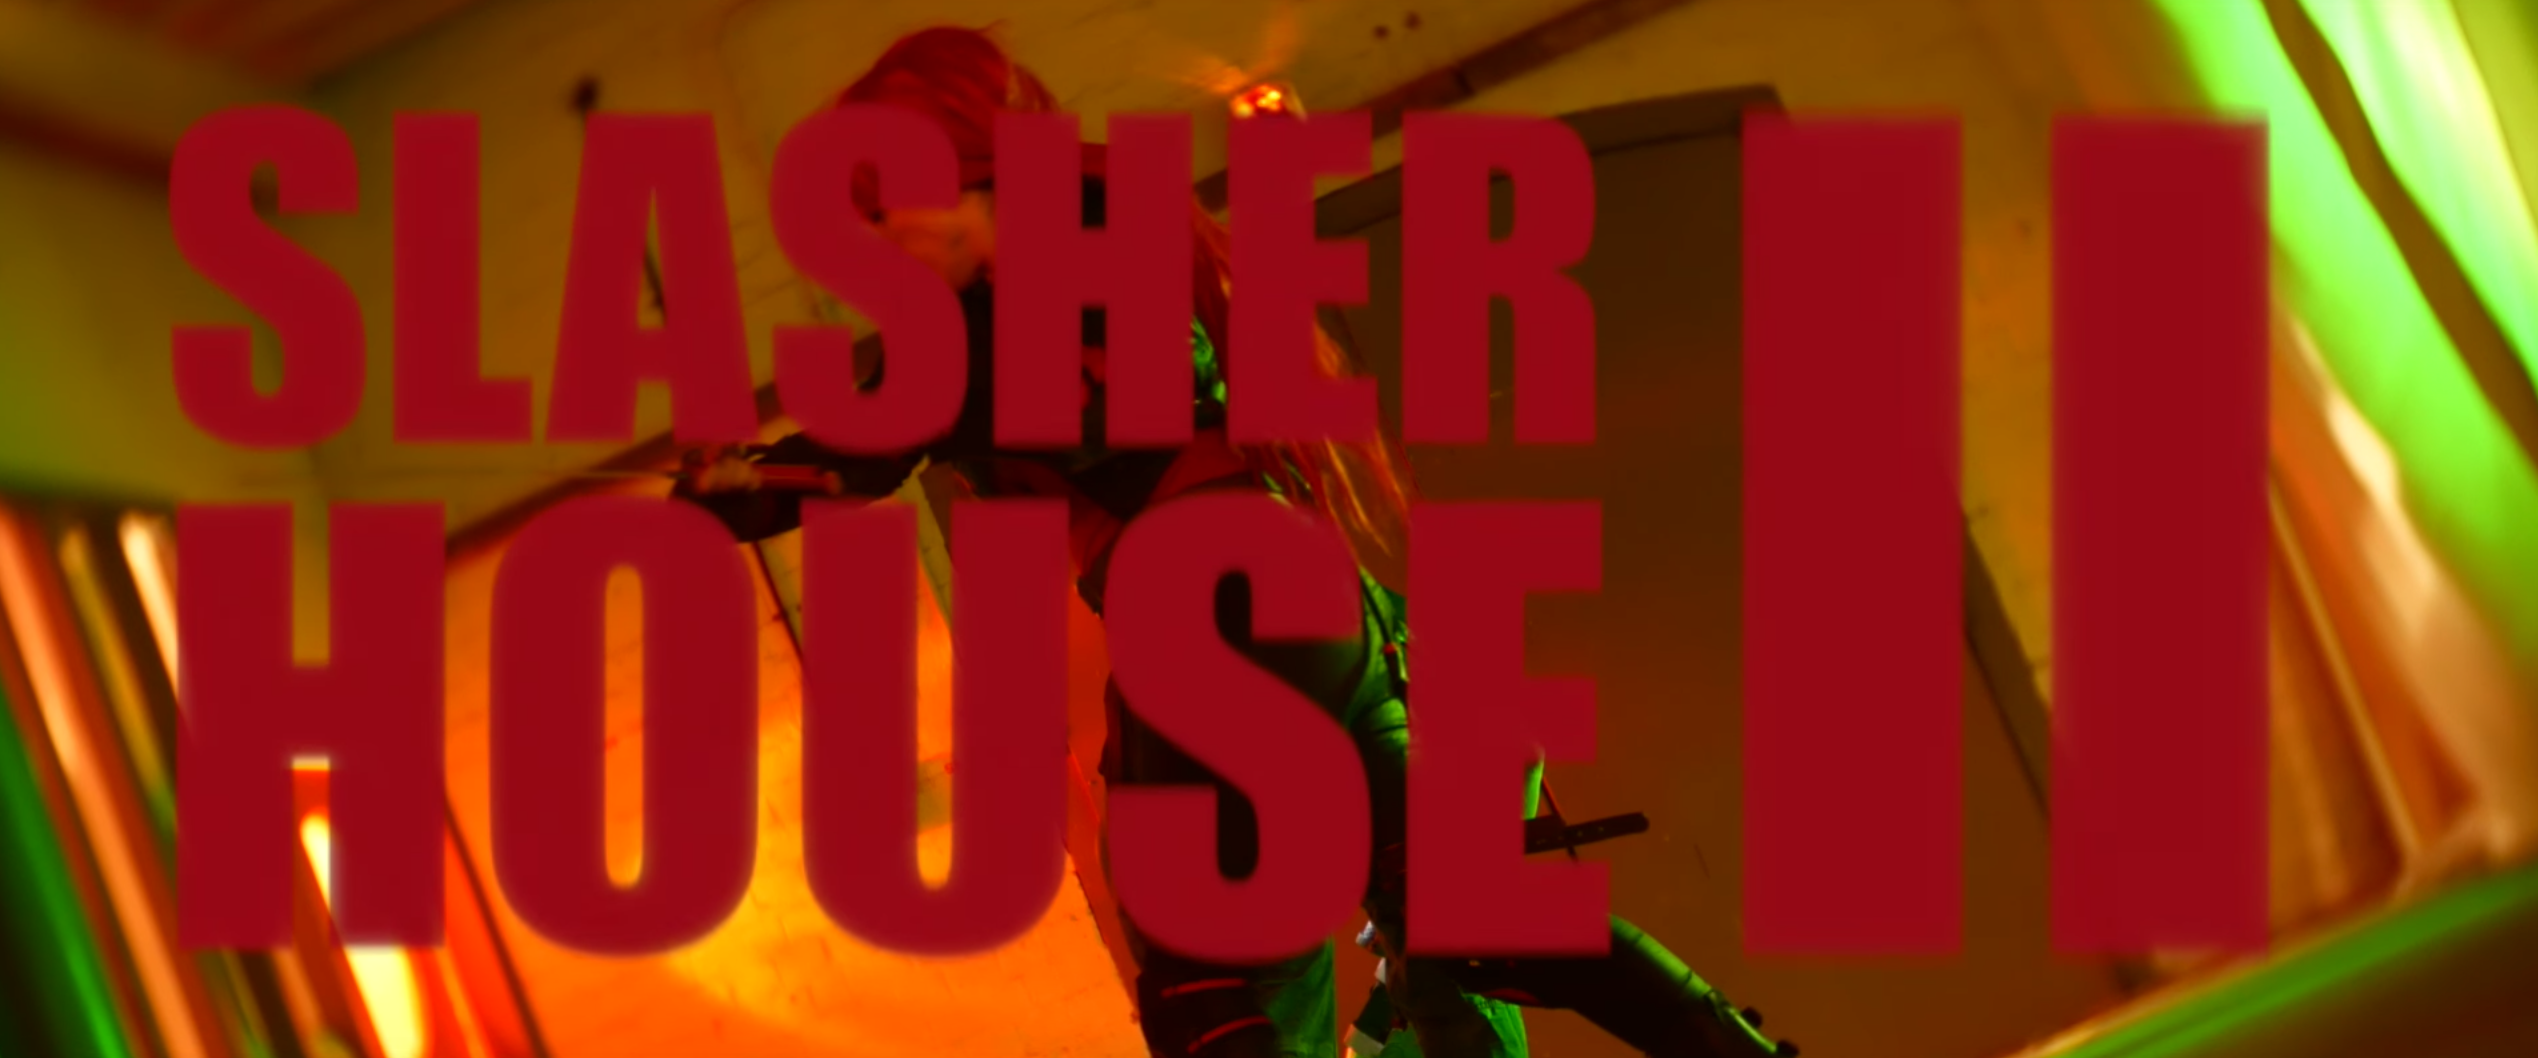 Reel Review: Slasher House 2